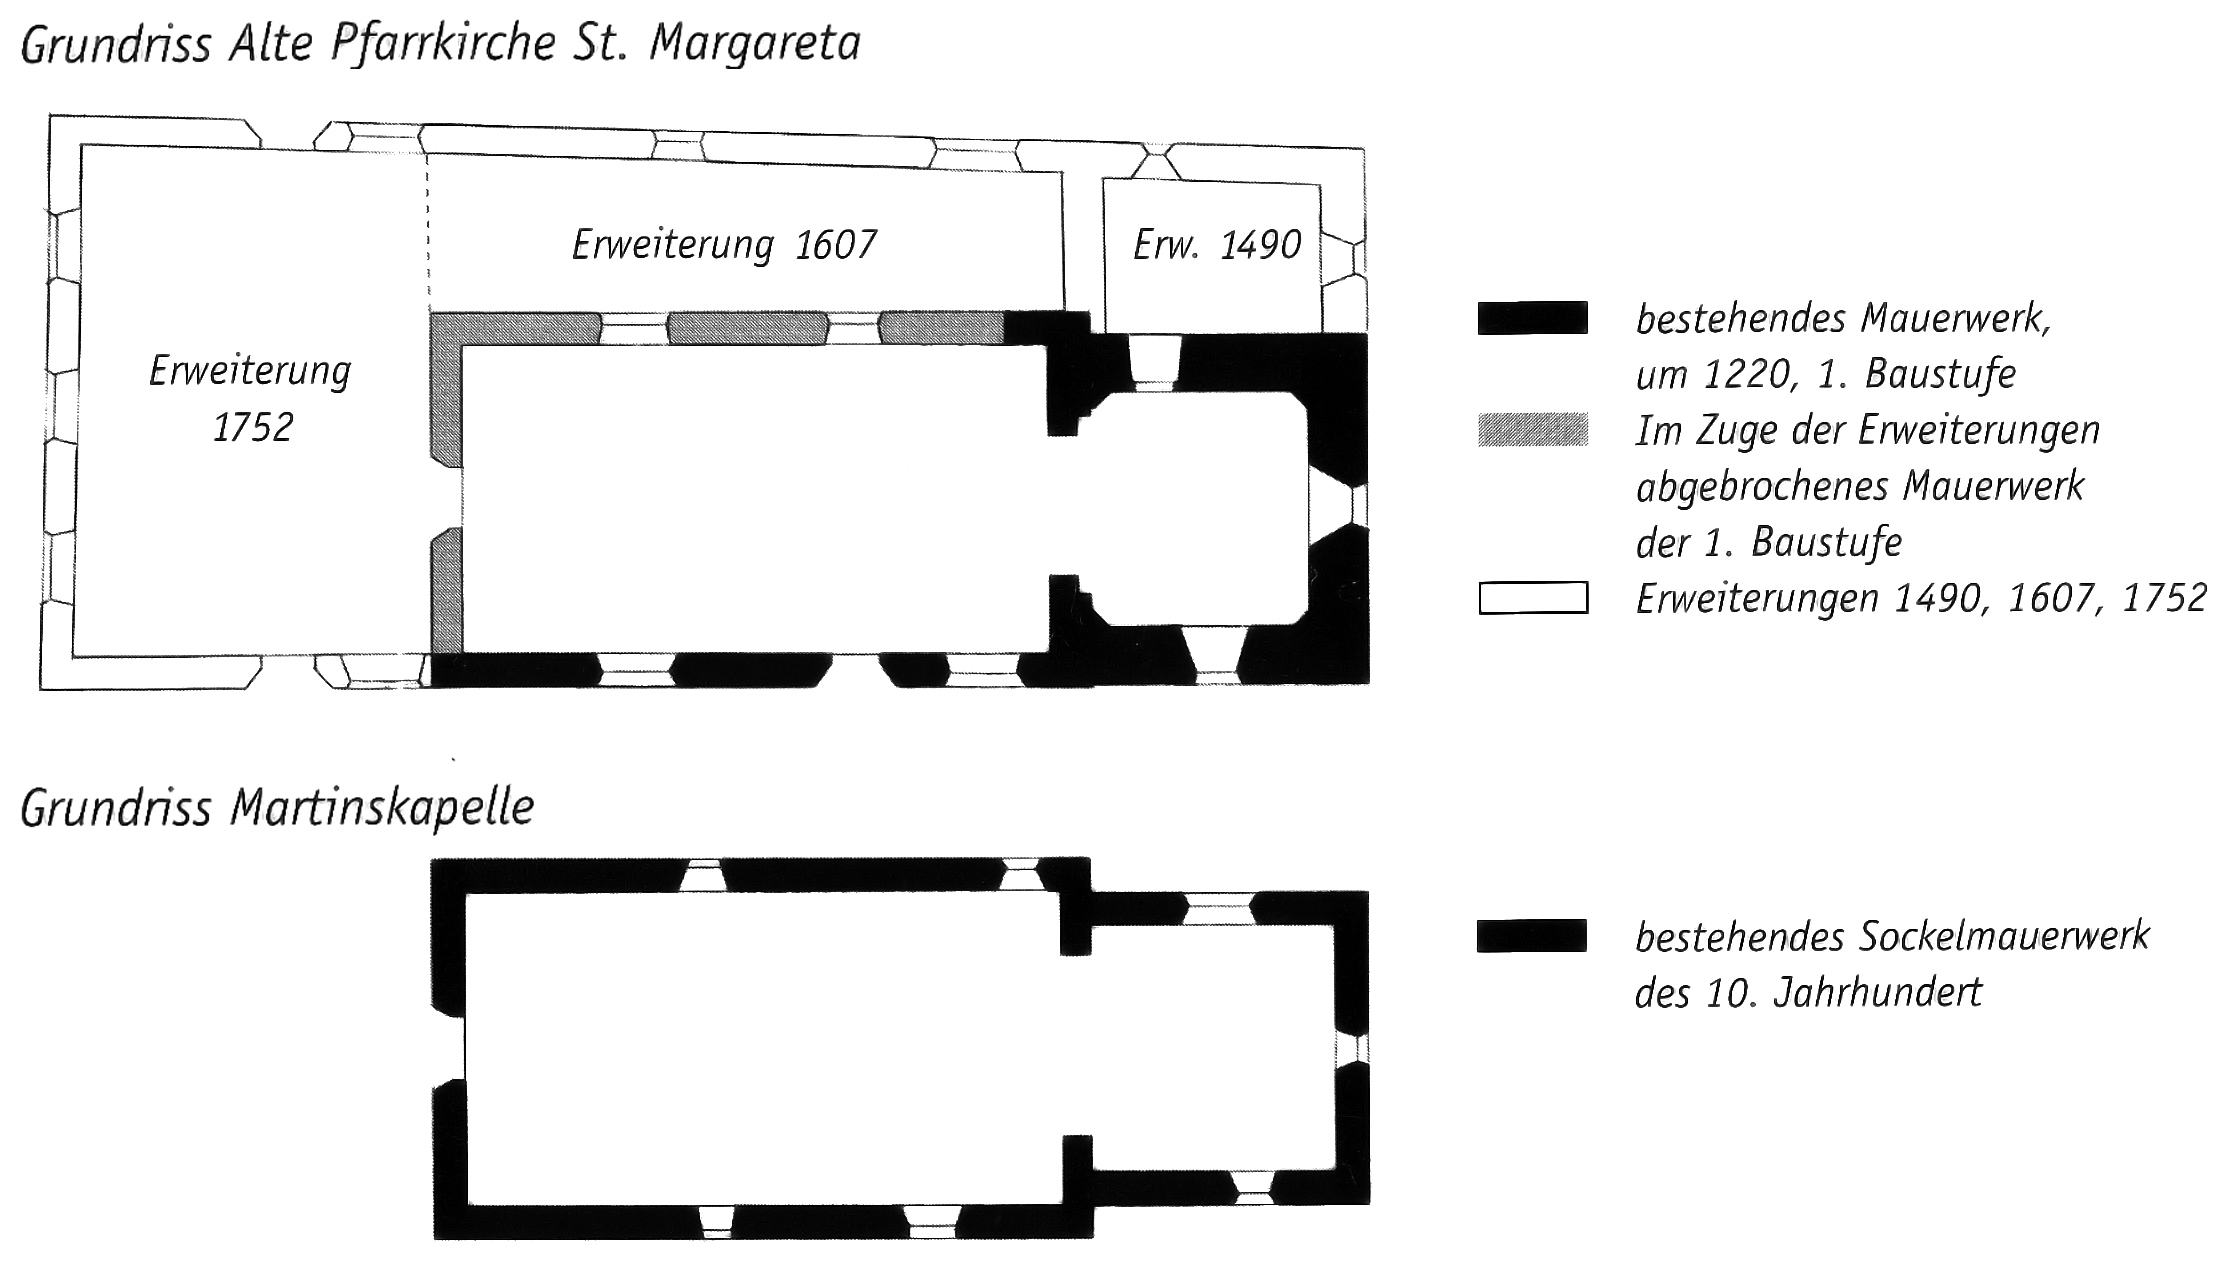 Die Grundrisse von St. Margareta und St. Martin im Vergleich. Aus: Meister (2004) S. 21